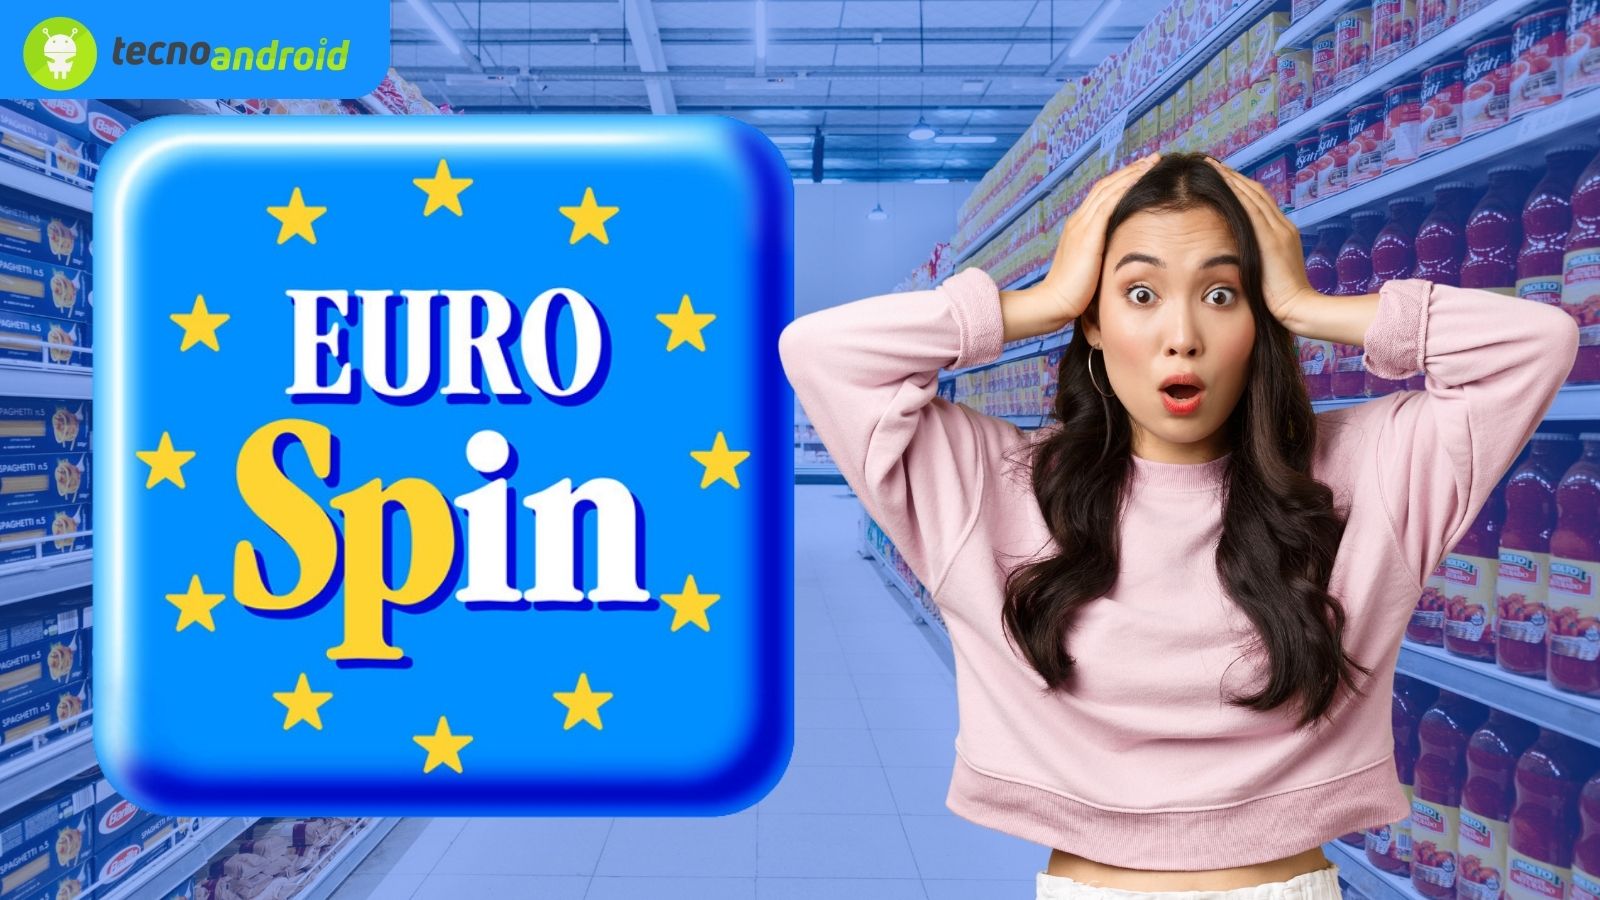 Eurospin offerta, sconto, promozione incredibile